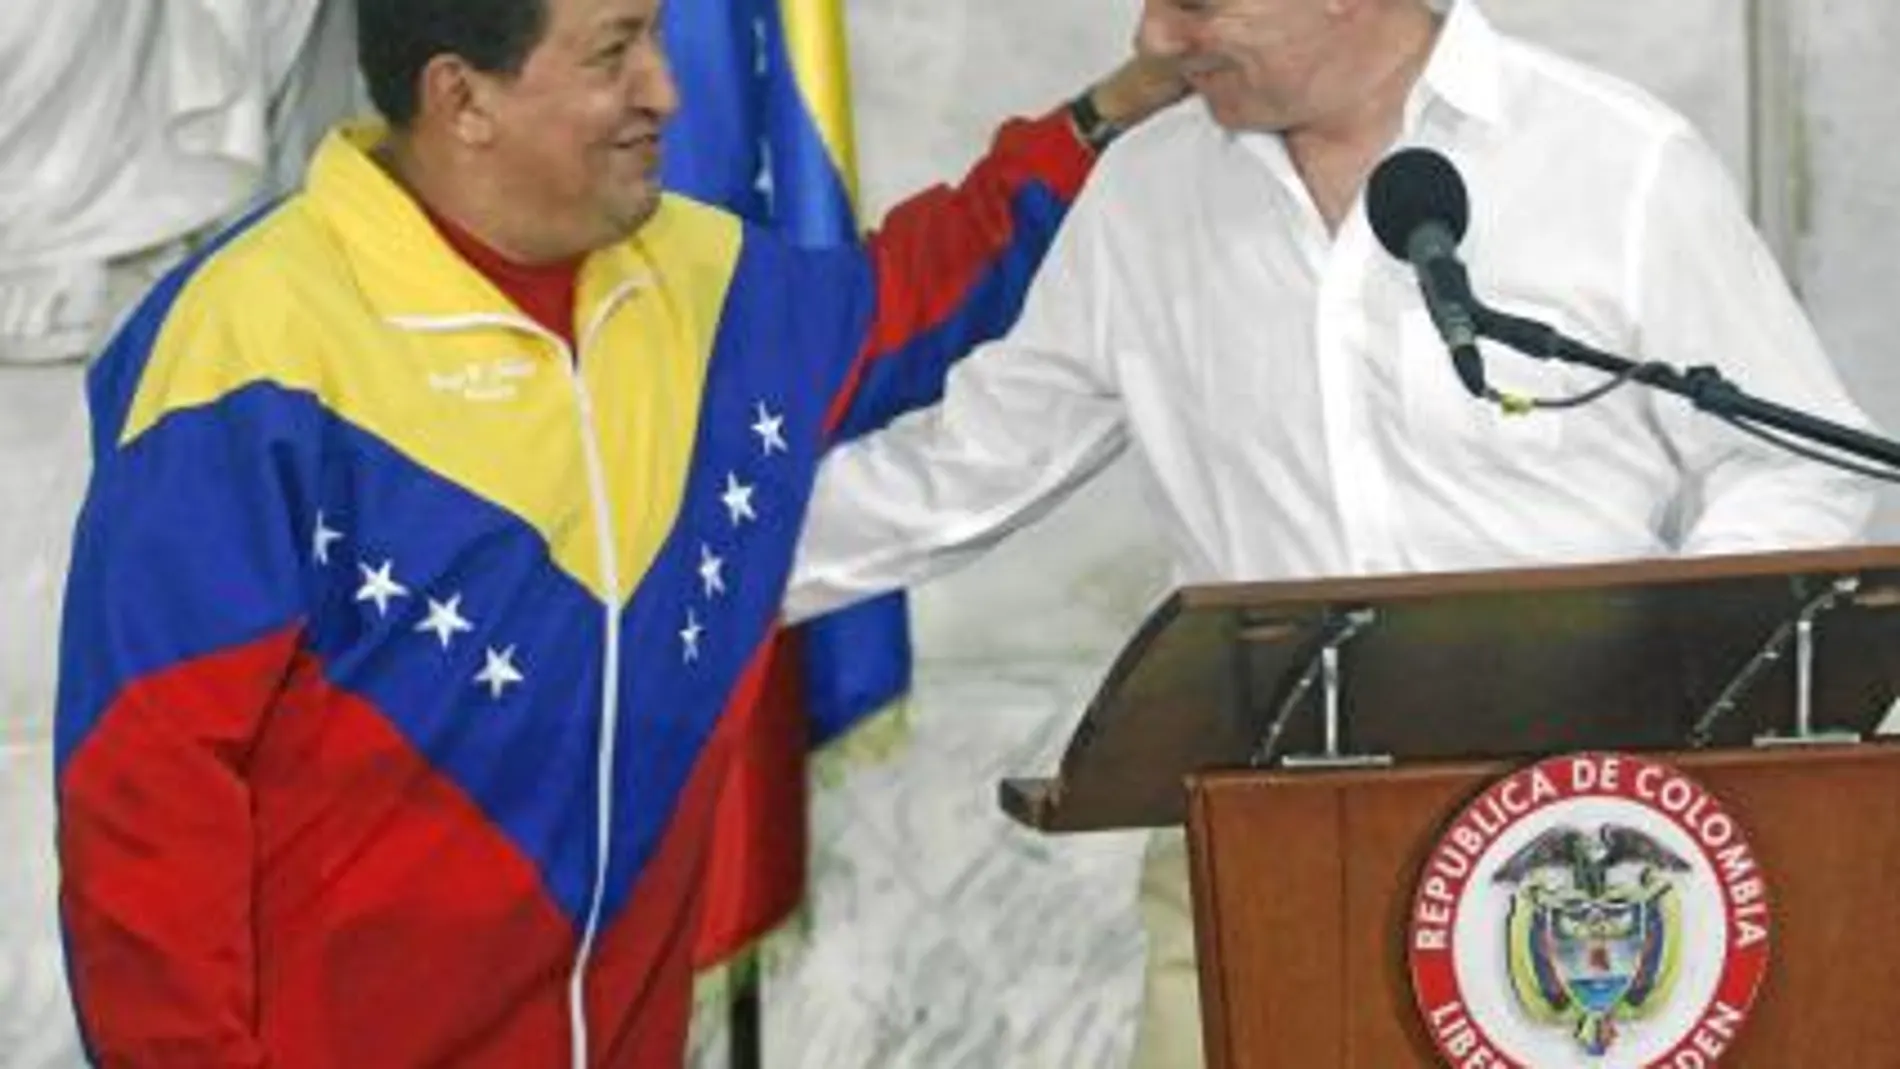 El presidente colombiano, Juan Manuel Santos, saluda a Chávez antes de la rueda de prensa en Santa Marta